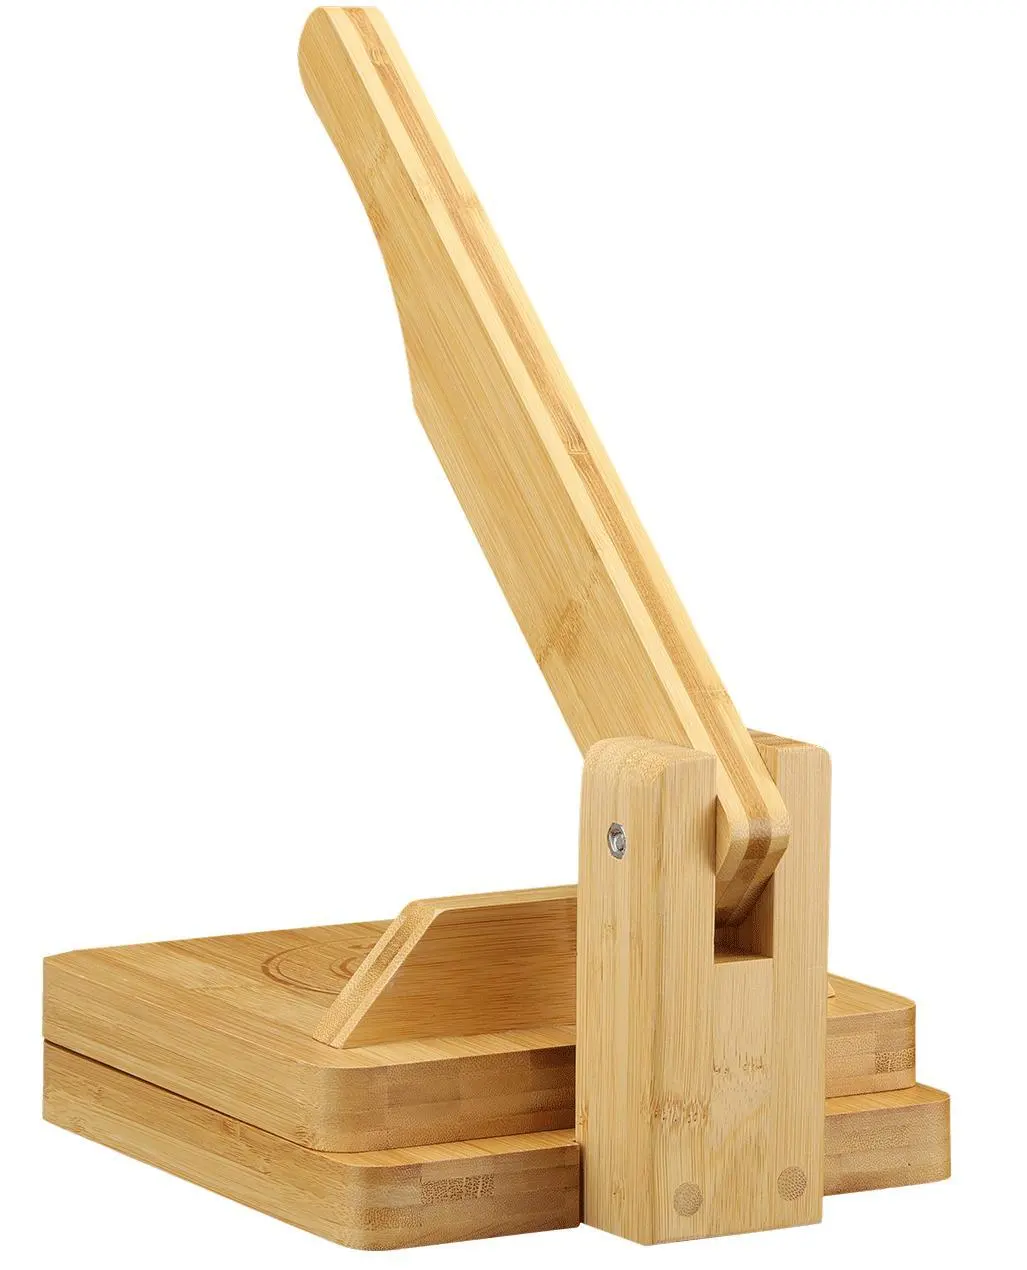 Holzteig presse Holzteig presse Ständer Holz tortilla Press halter zu wettbewerbs fähigen Preisen einzigartiges Design